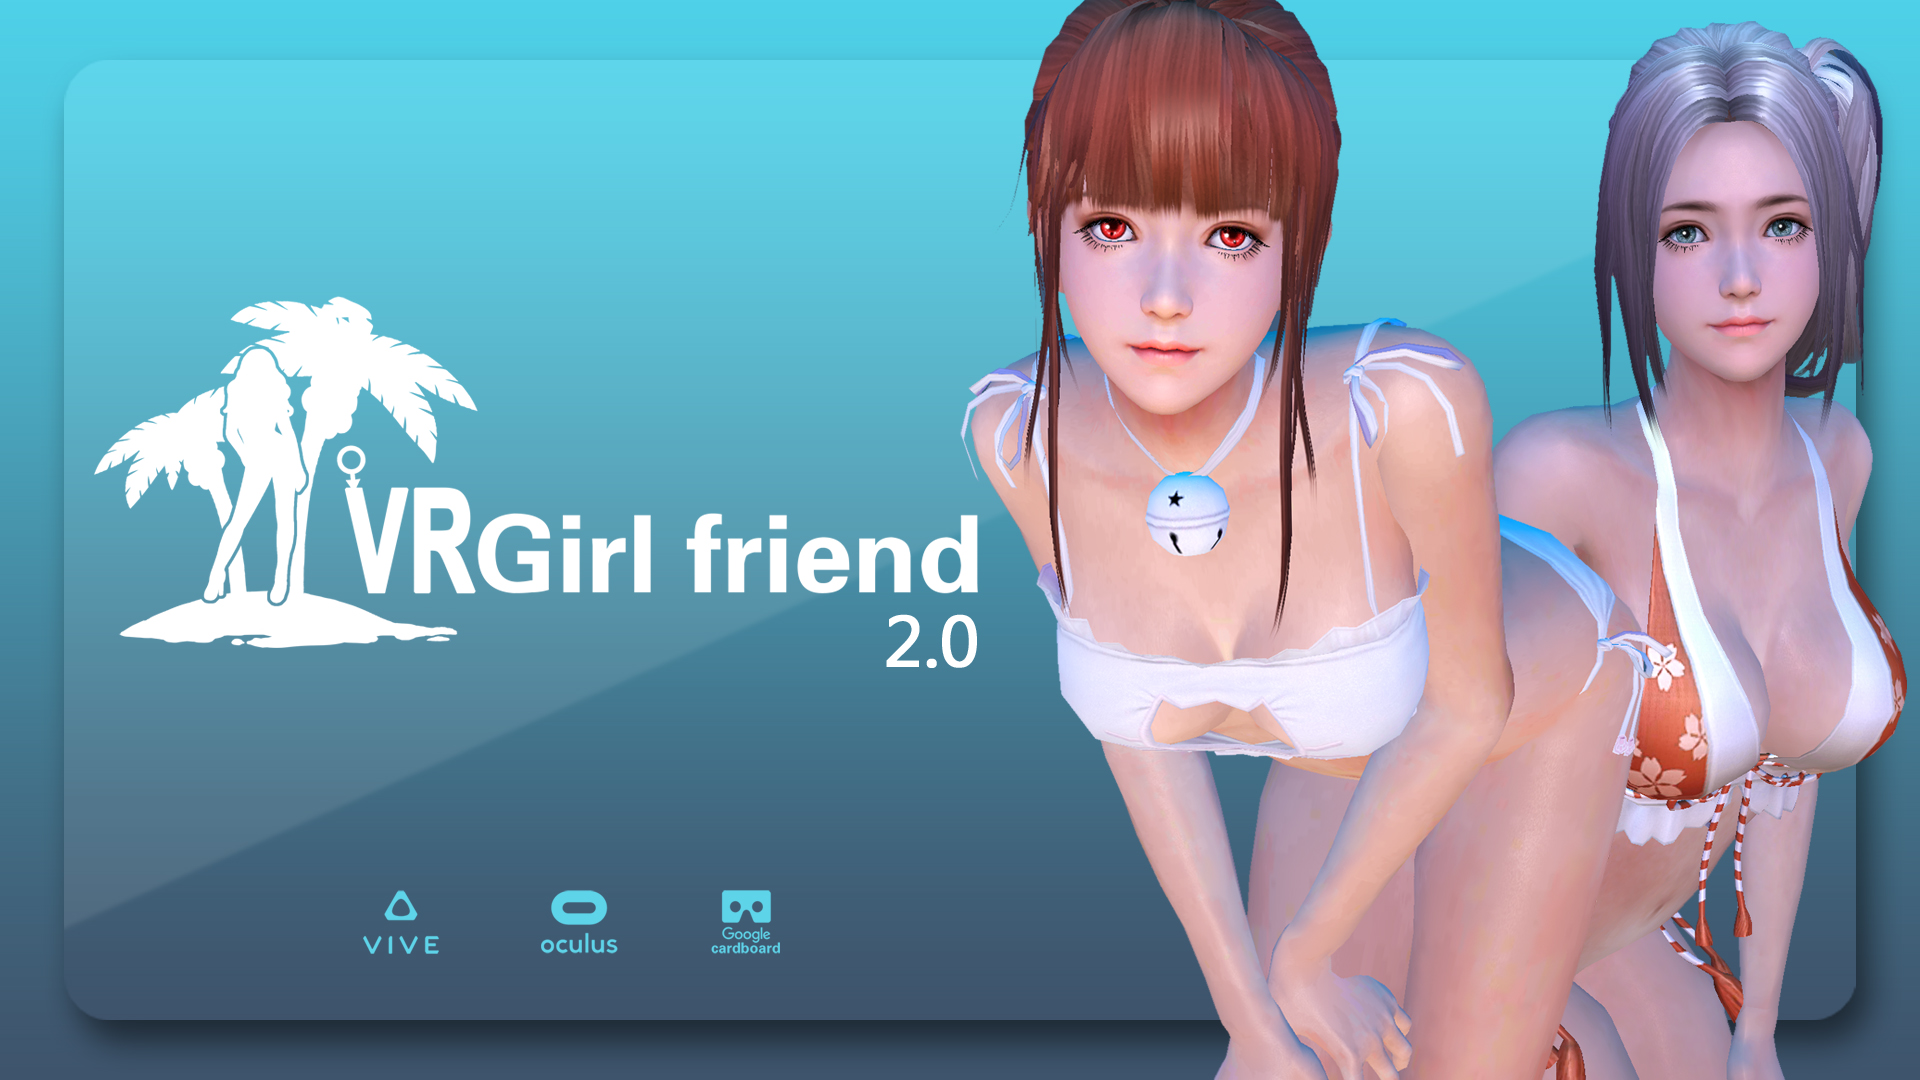 VR GirlFriend on Steam